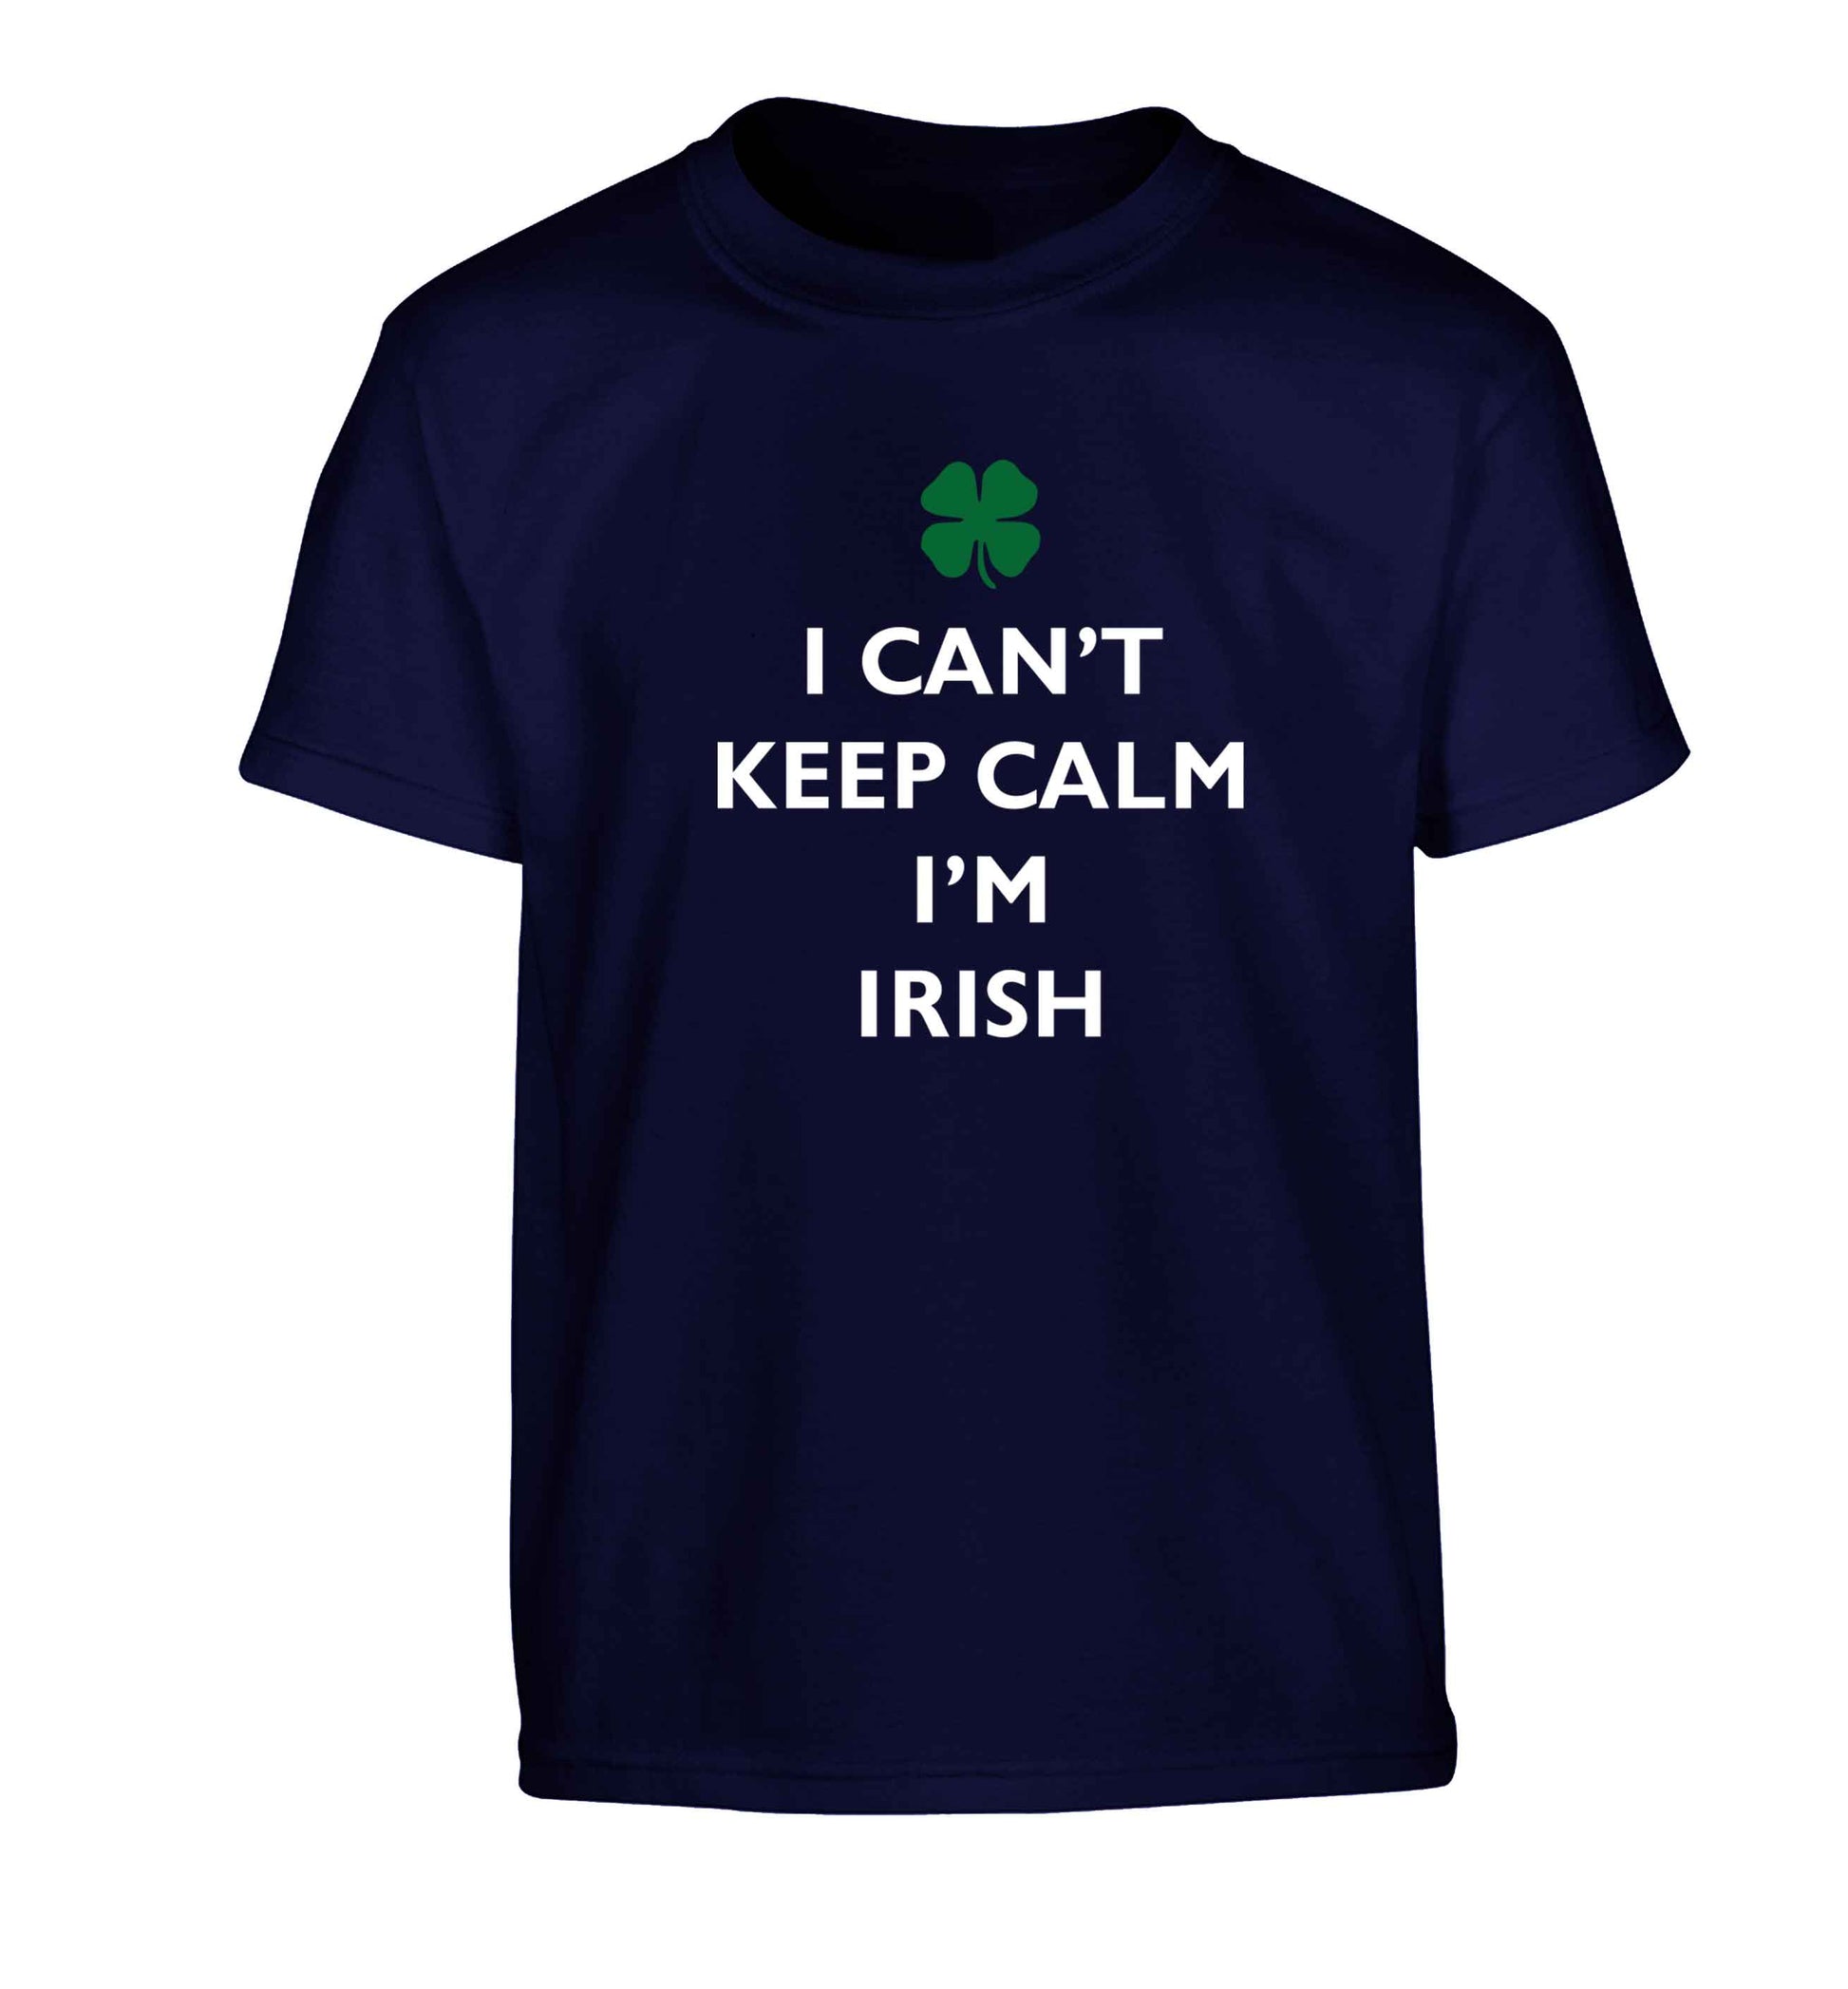 I can't keep calm I'm Irish Children's navy Tshirt 12-13 Years